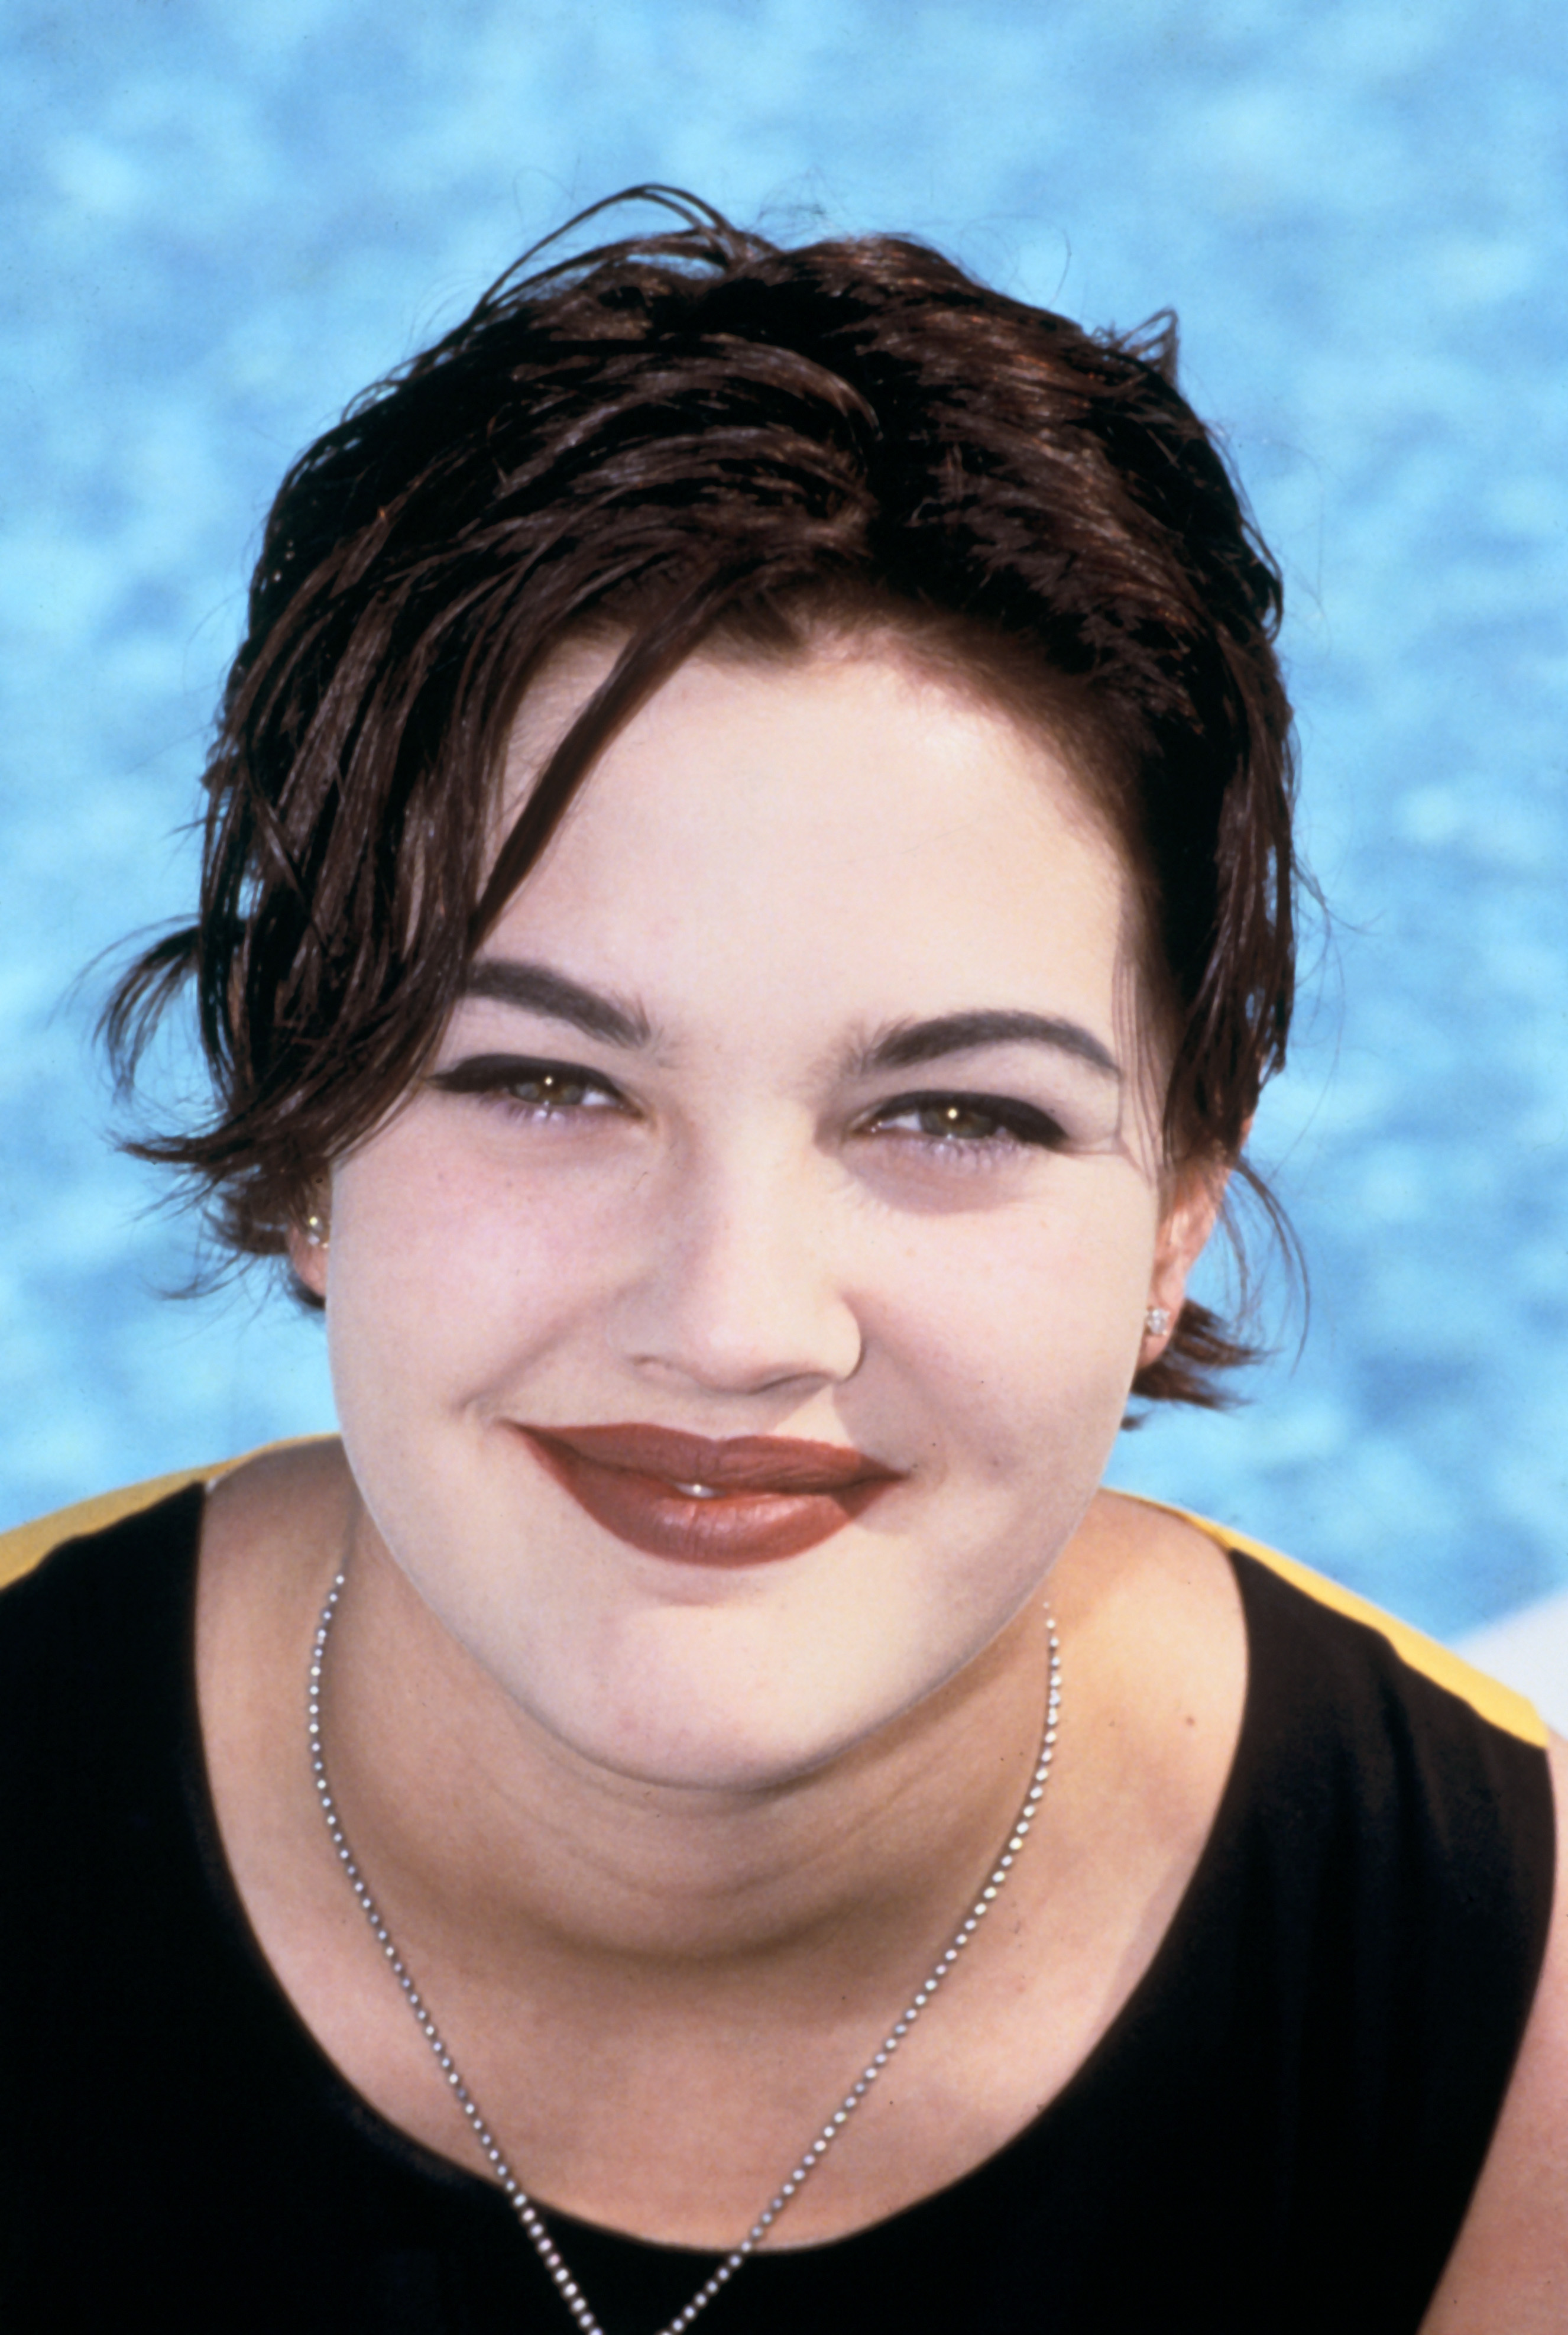 Drew Barrymore fotografiada el 1 de enero de 1990 | Fuente: Getty Images